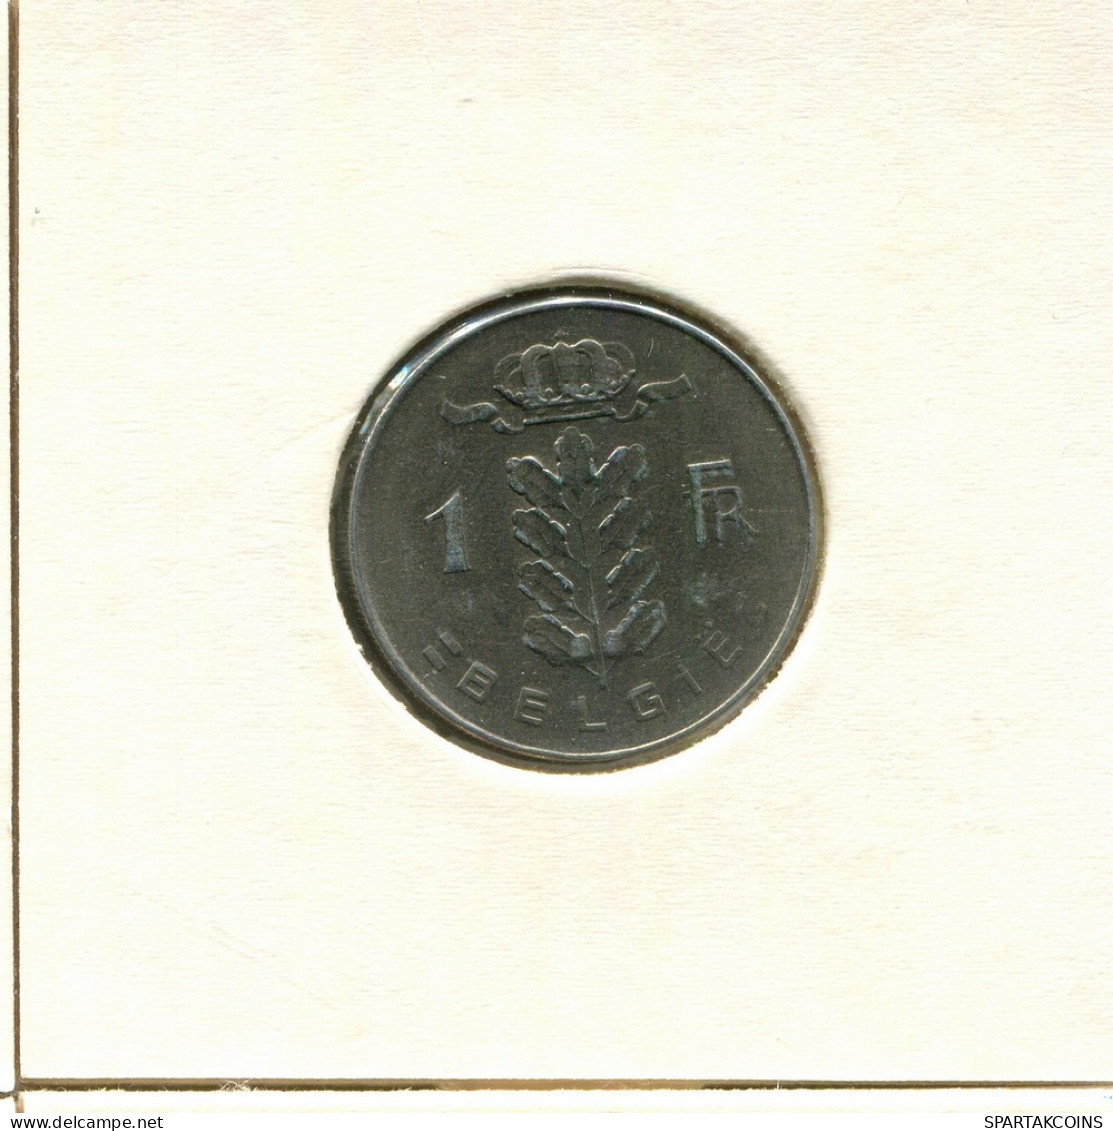 1 FRANC 1973 DUTCH Text BELGIEN BELGIUM Münze #BB191.D.A - 1 Franc